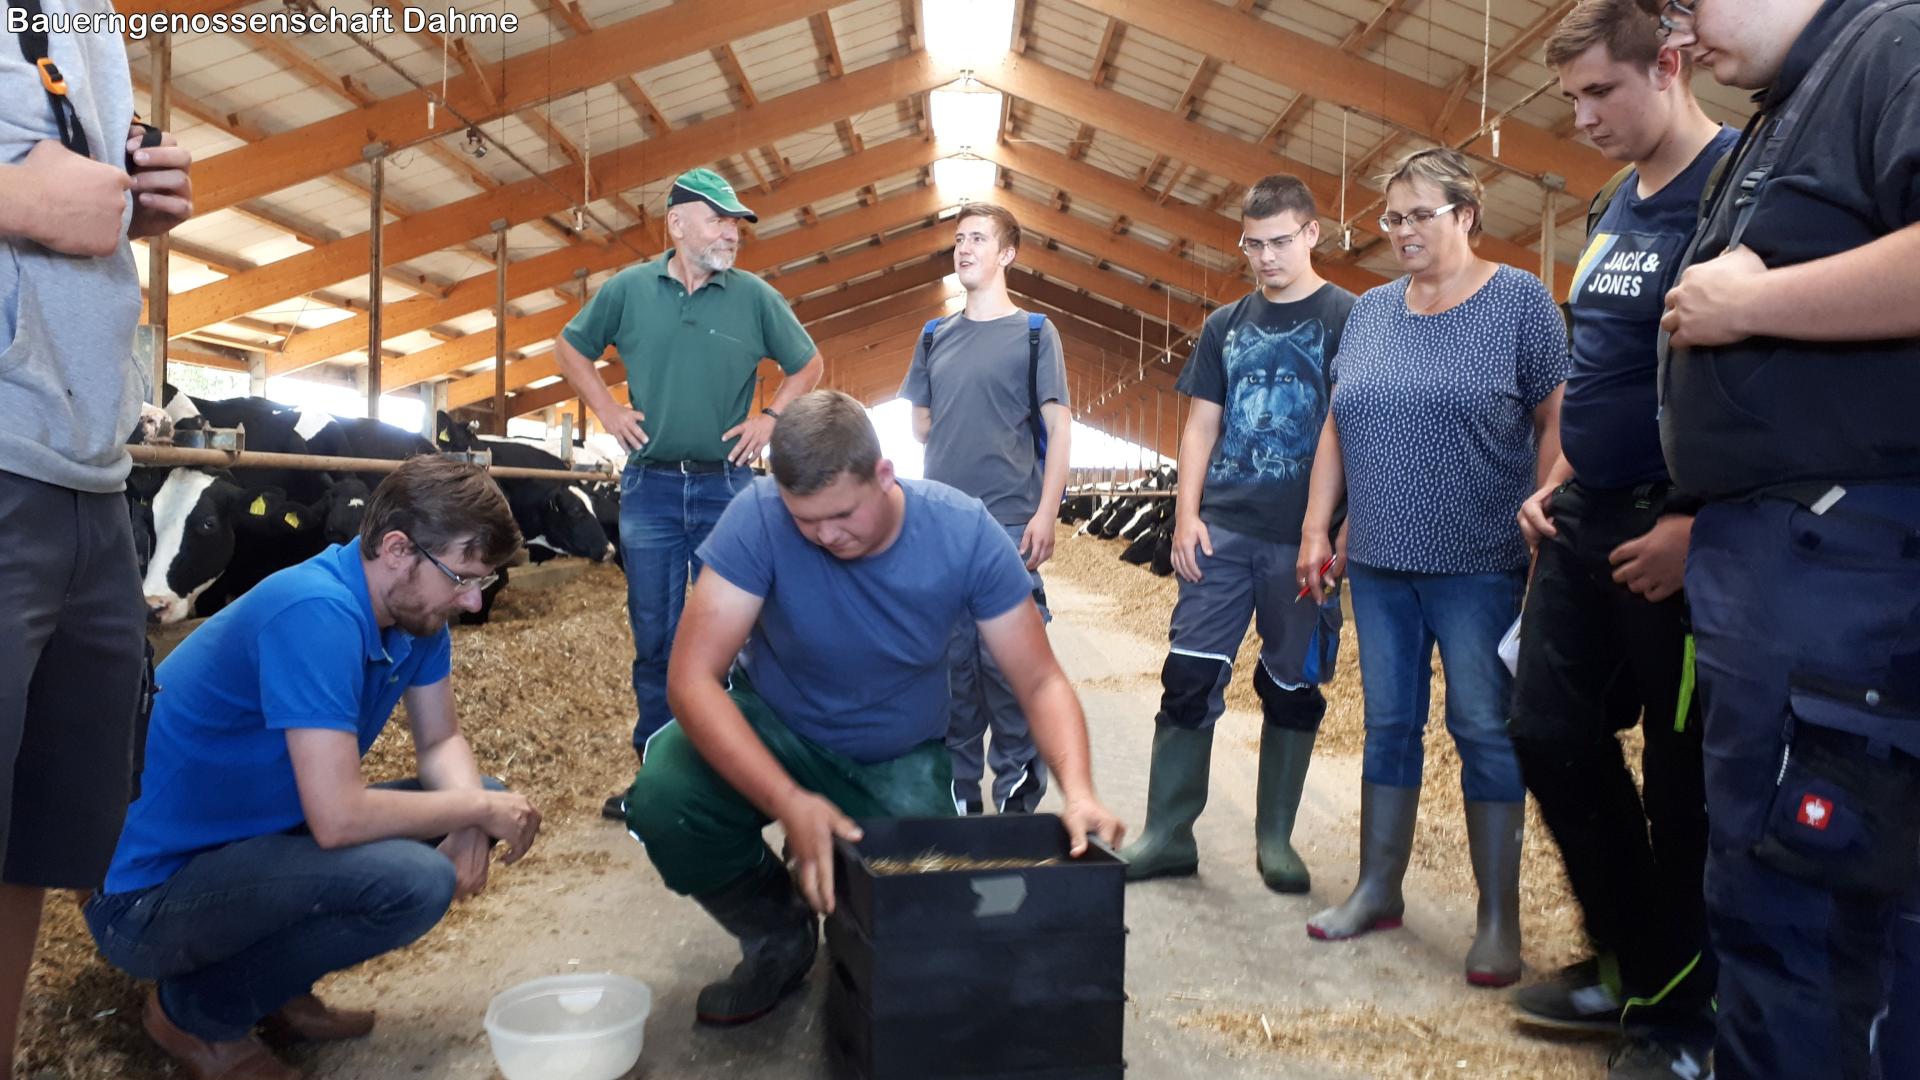 Lehrunterweisung Milchviehfütterung in Dahme